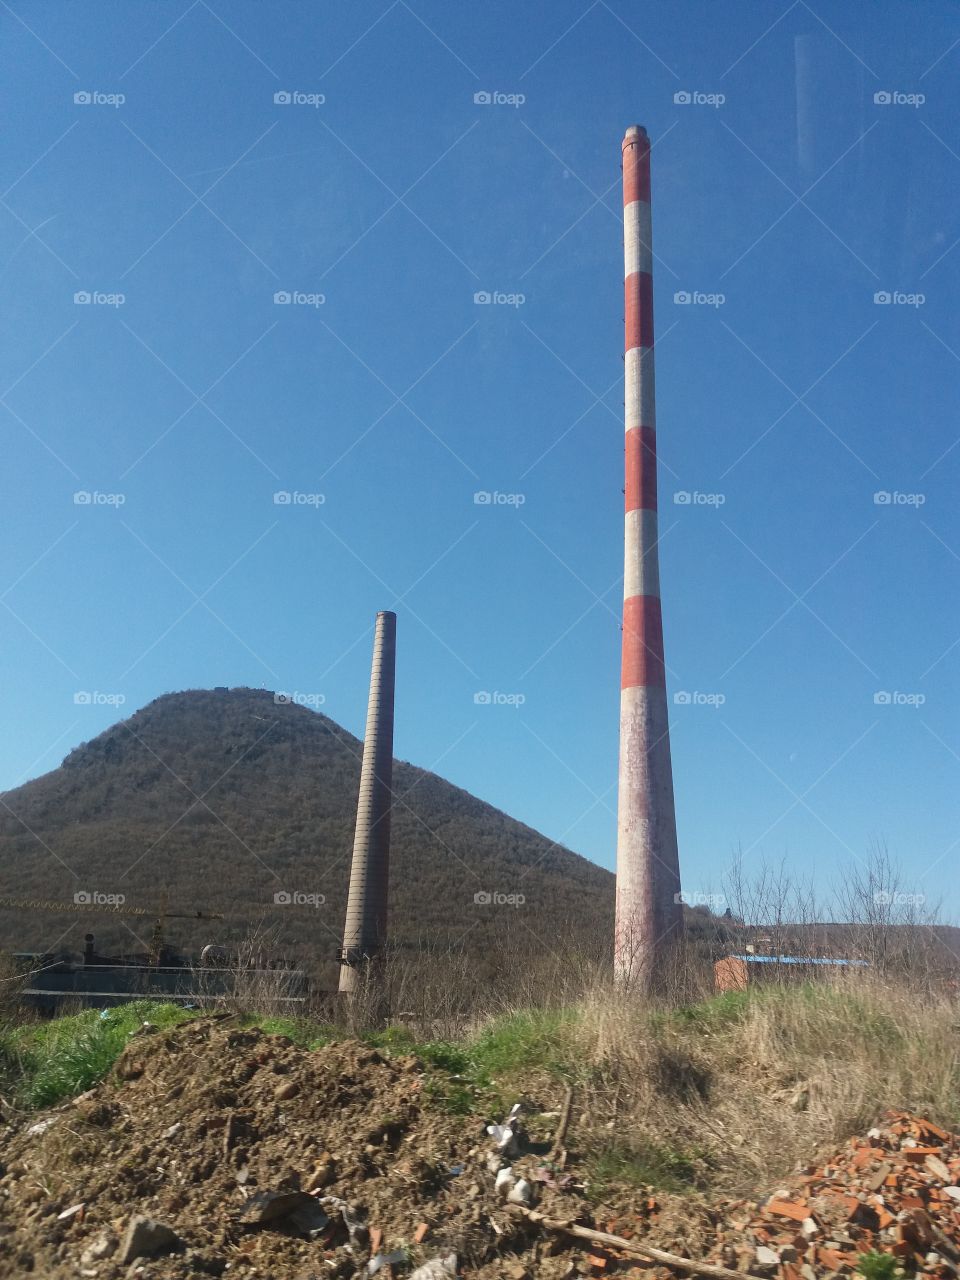 trepca ore factory in kosovo